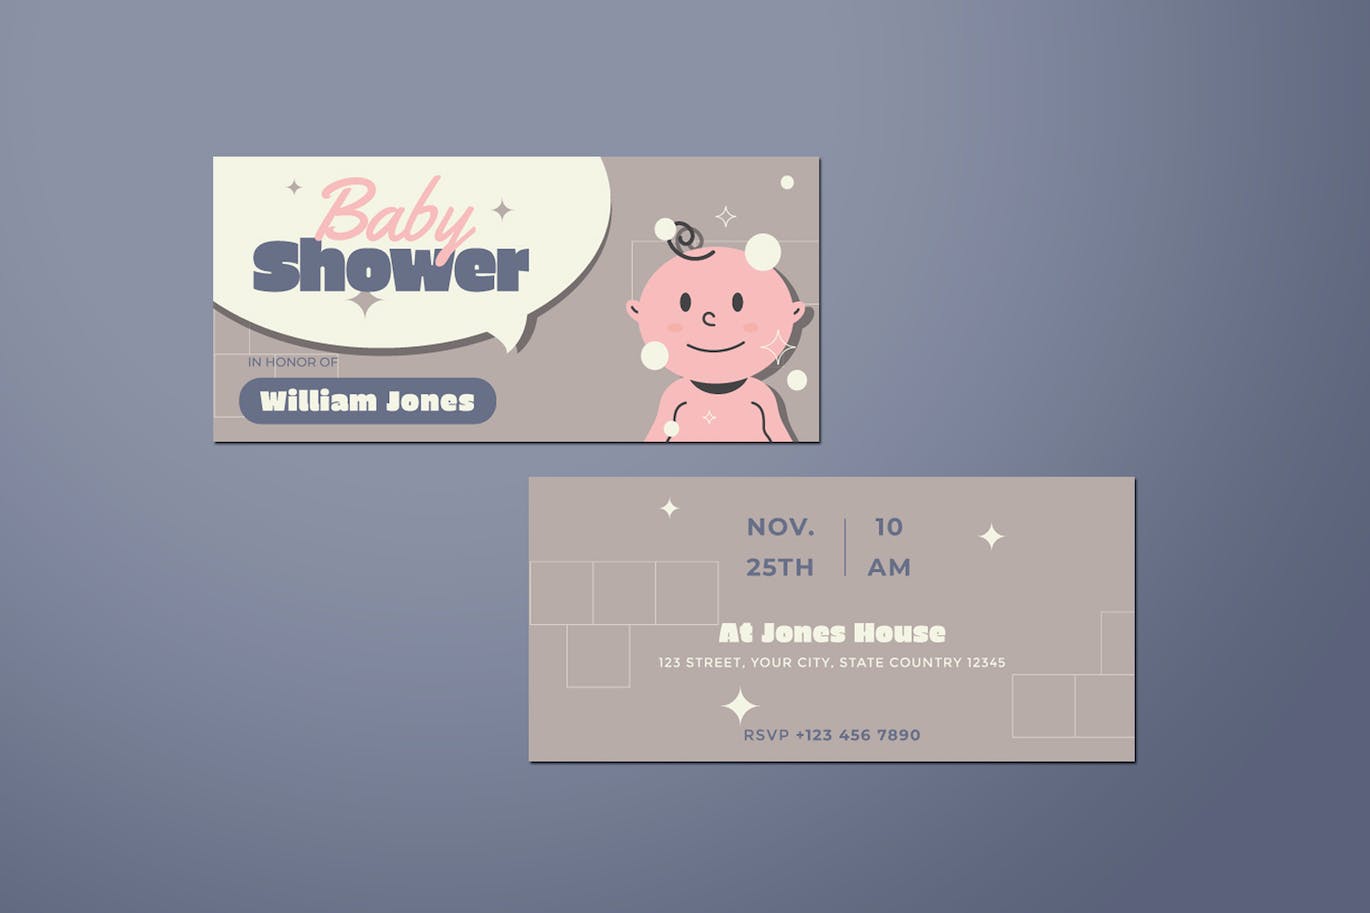 婴孩派对DL传单设计模板 Baby Shower DL Flyer 设计素材 第4张